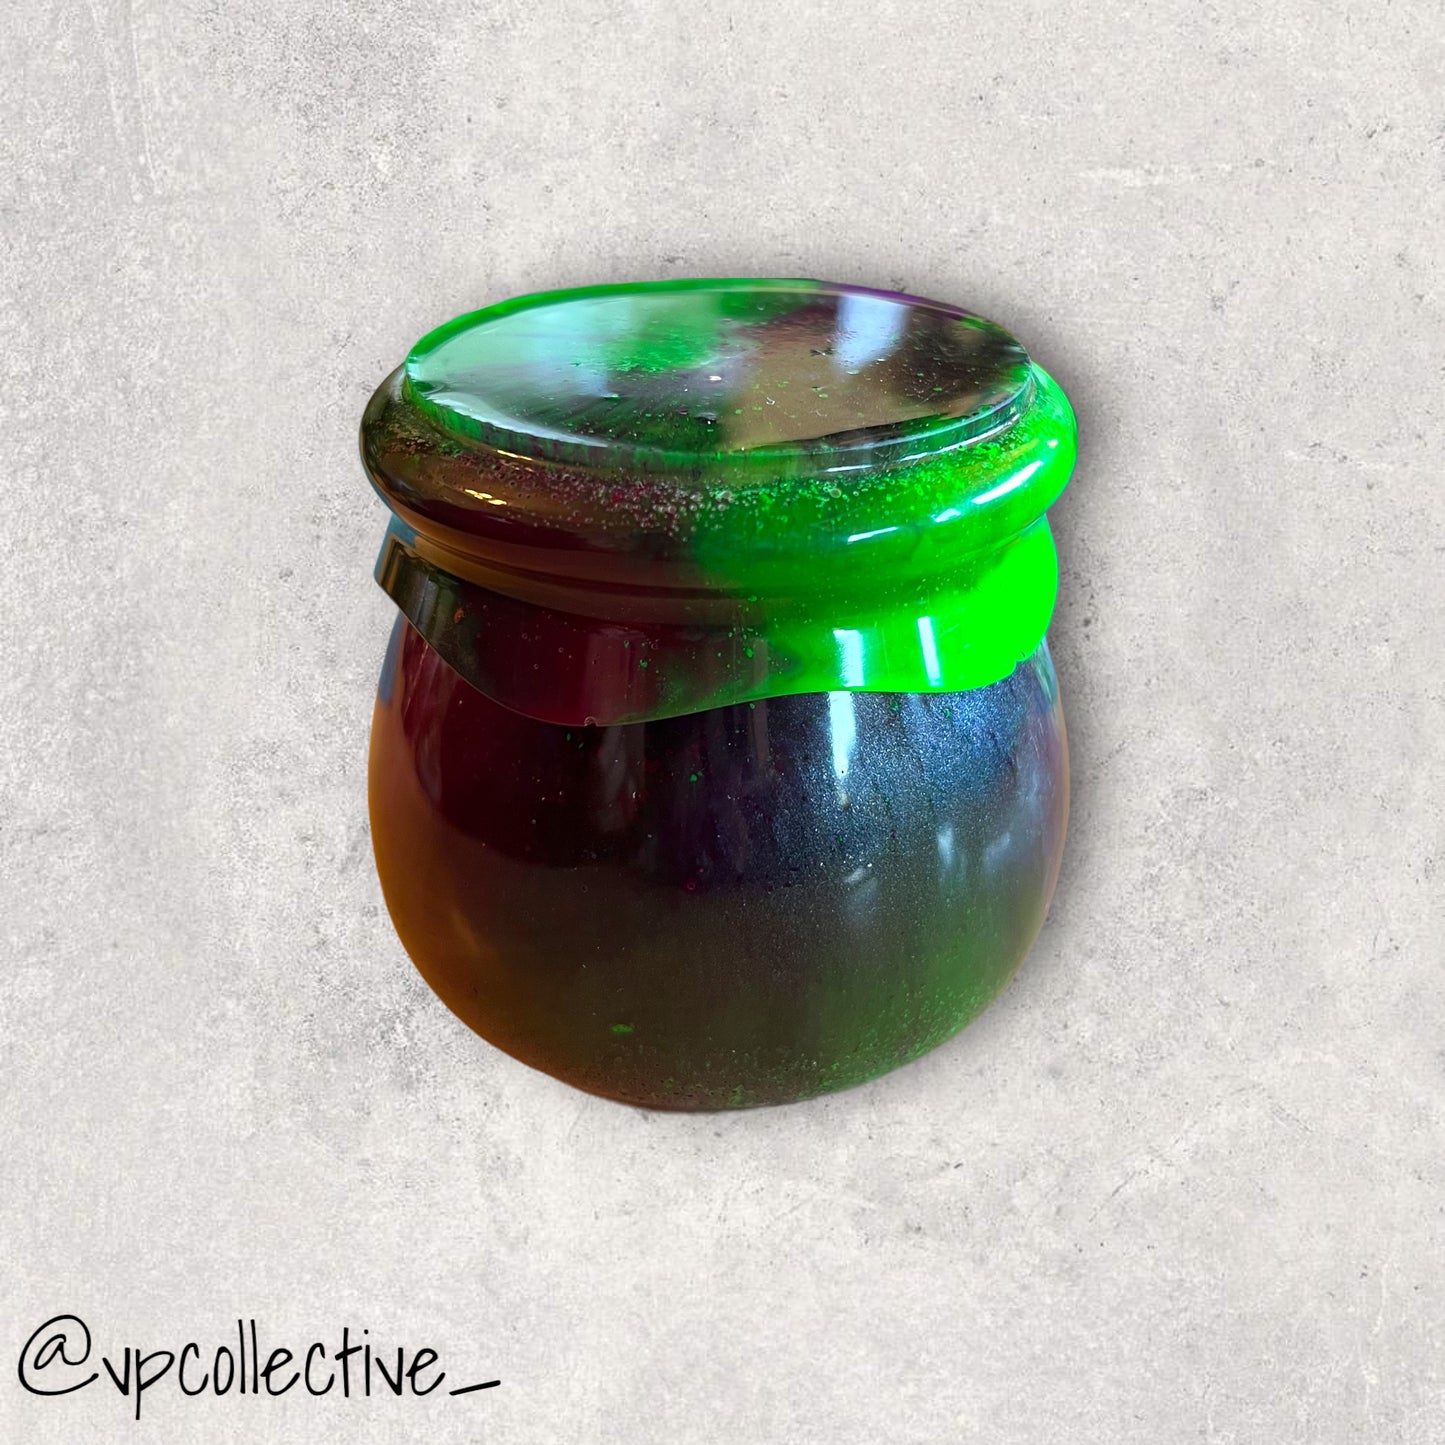 Beetlejuice- Jar with Threaded Lid